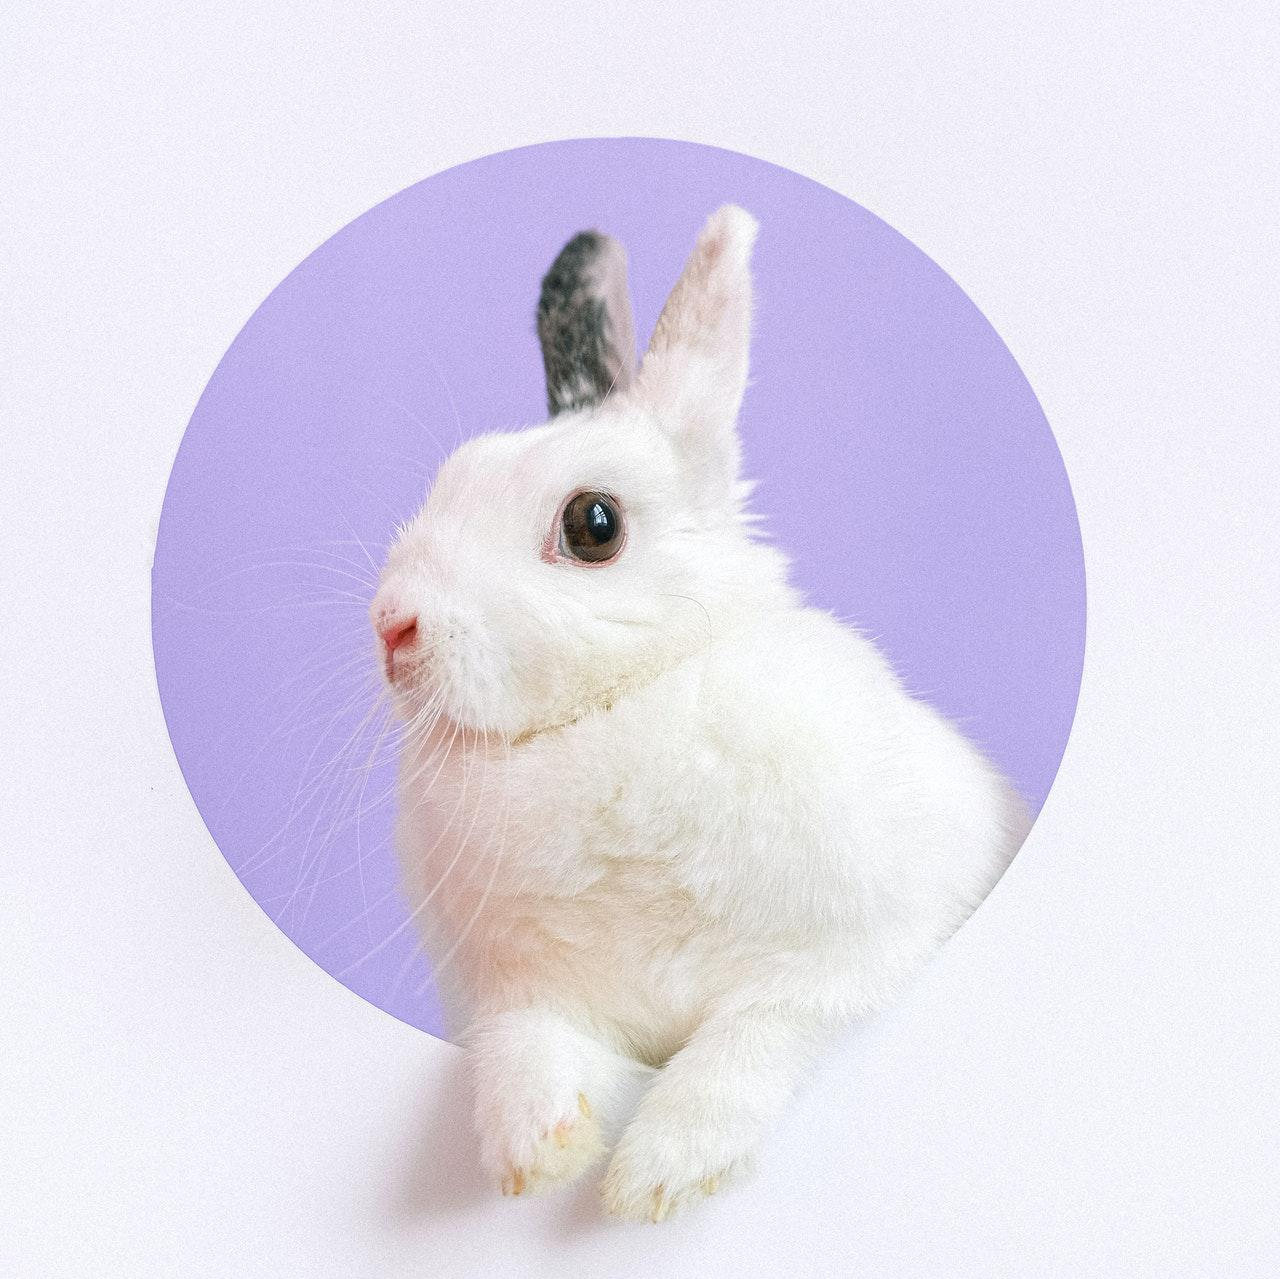 보라색 동그라미에 몸을 내밀고 있는 하얀색 토끼 